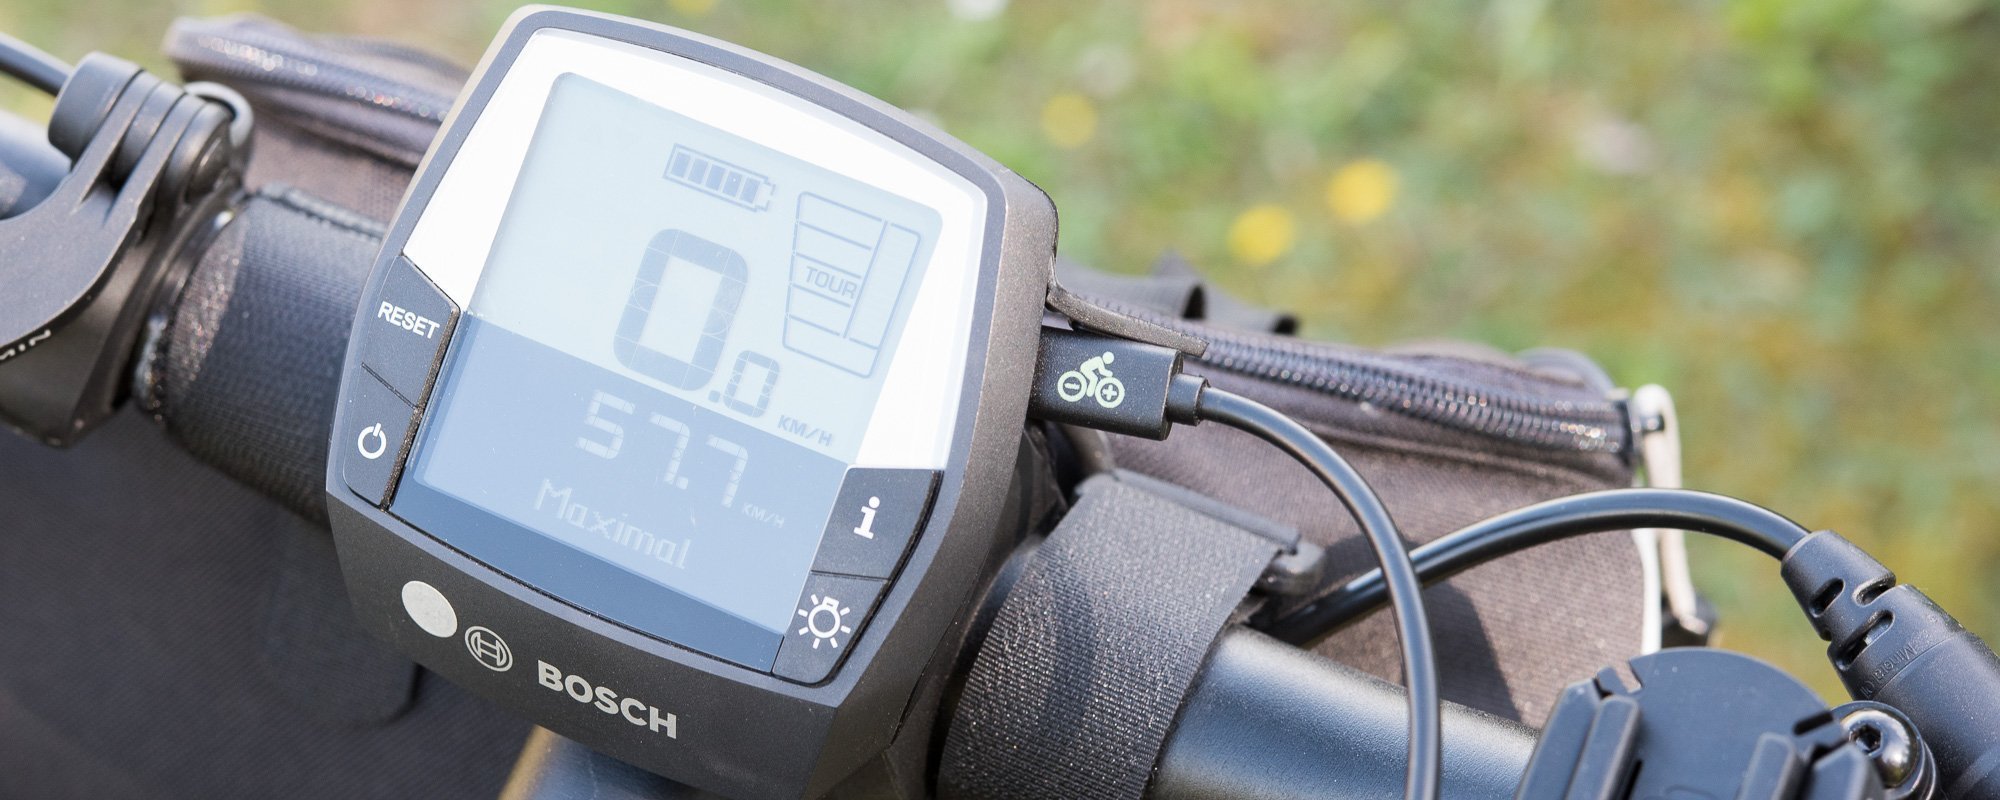 Smartphone oder GPS am Bosch eBike laden